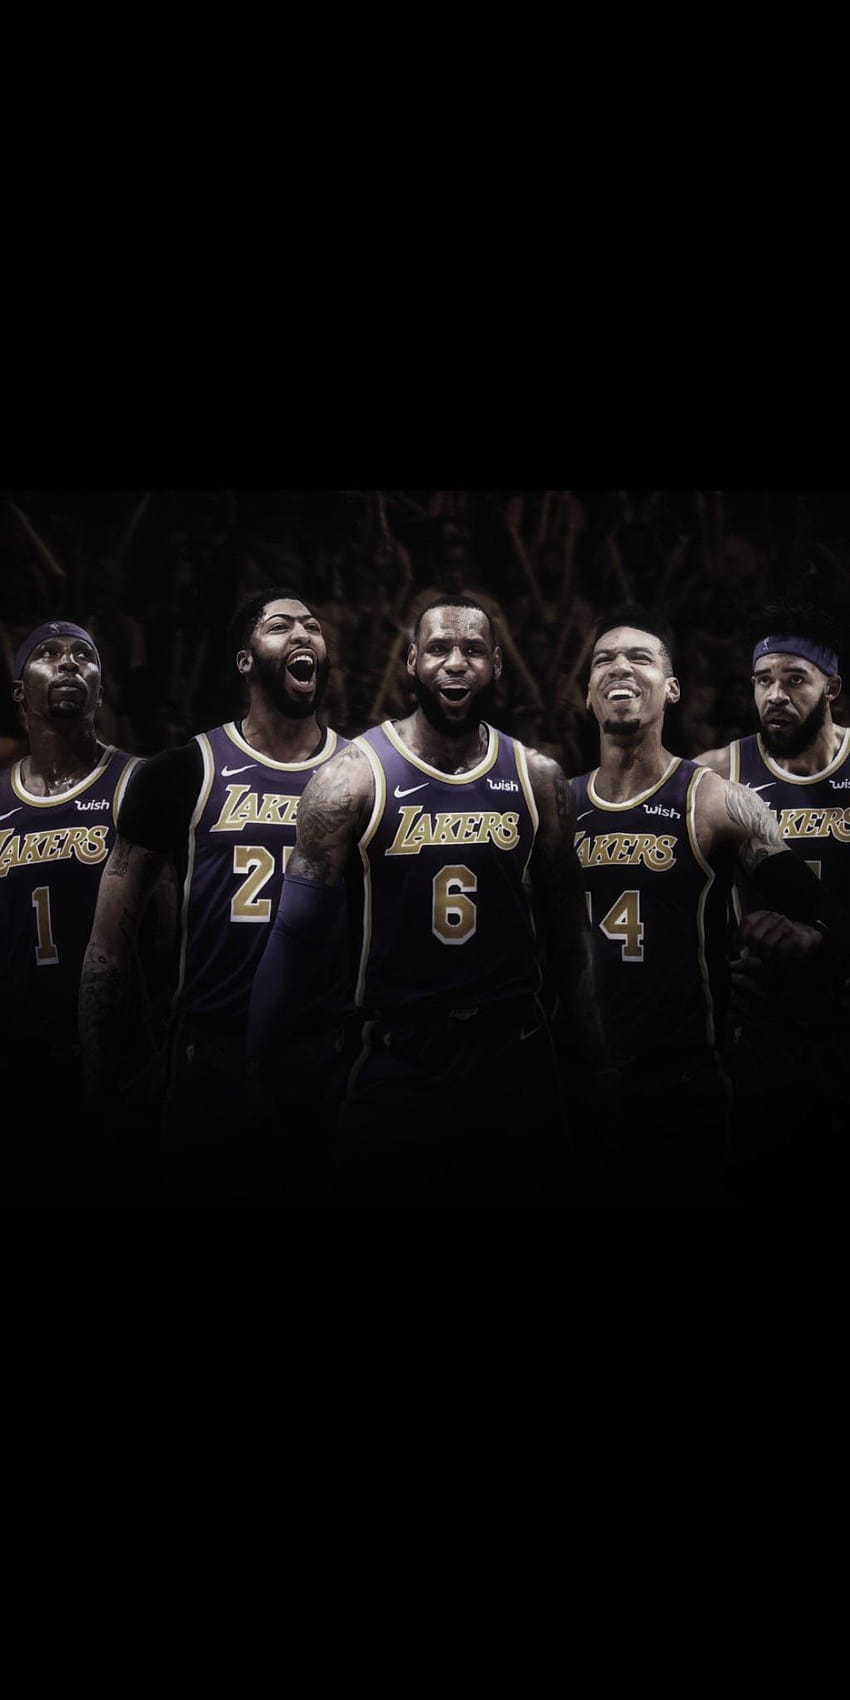 Lakers 2019, lakers team HD phone wallpaper